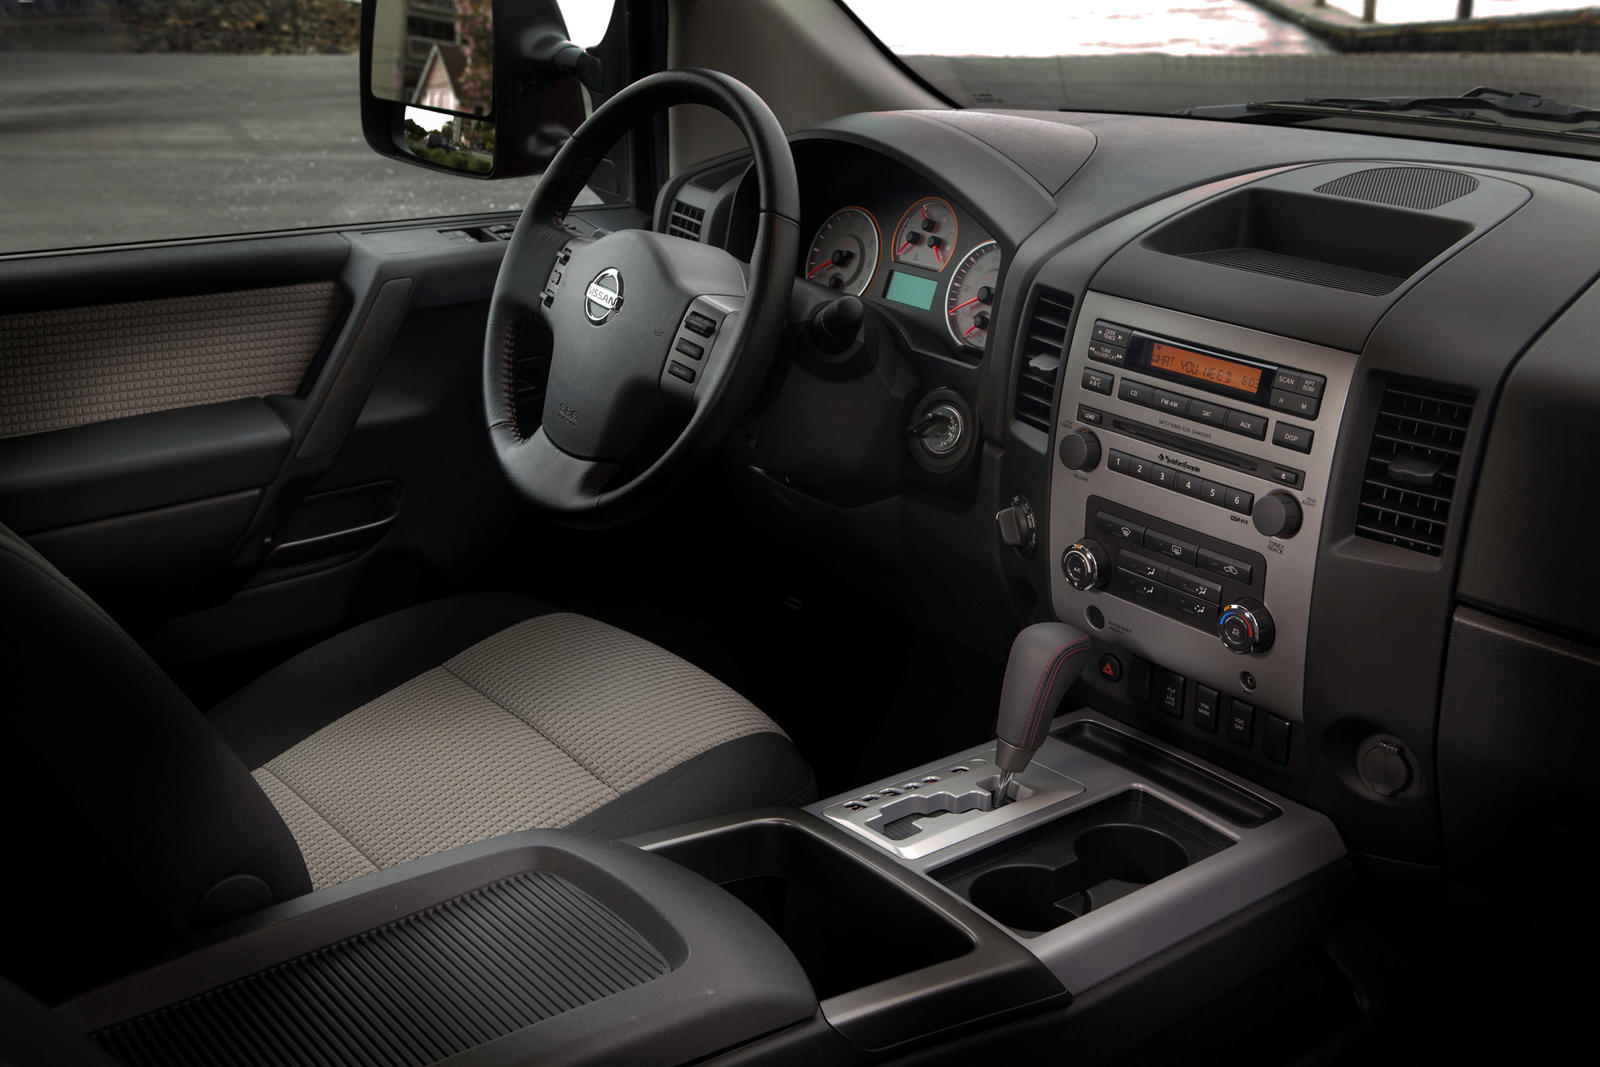 2013 Nissan Titan Interior Photos | CarBuzz